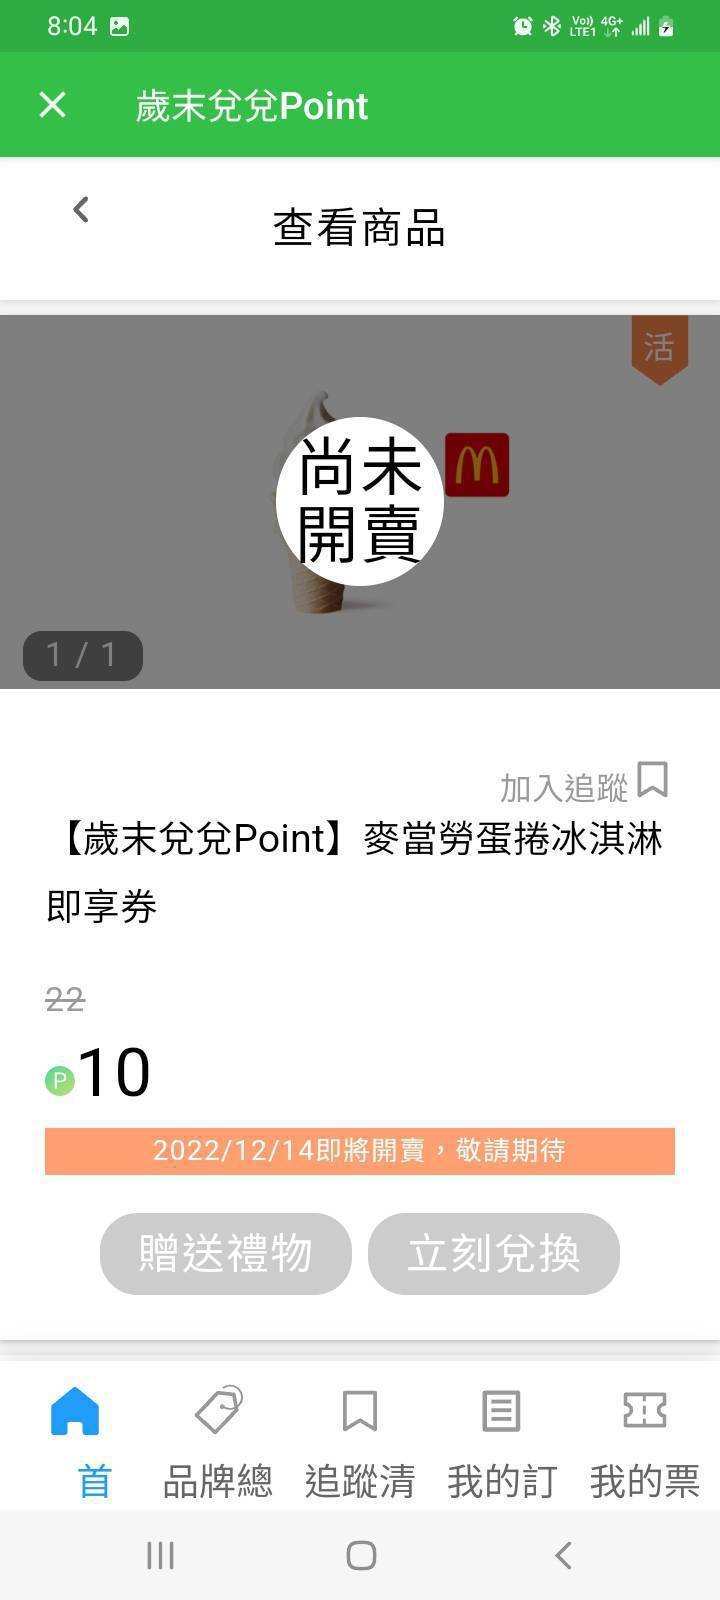 針對一般用戶，中華電信也推出歲末兌兌Point活動，10點Hami Point可...